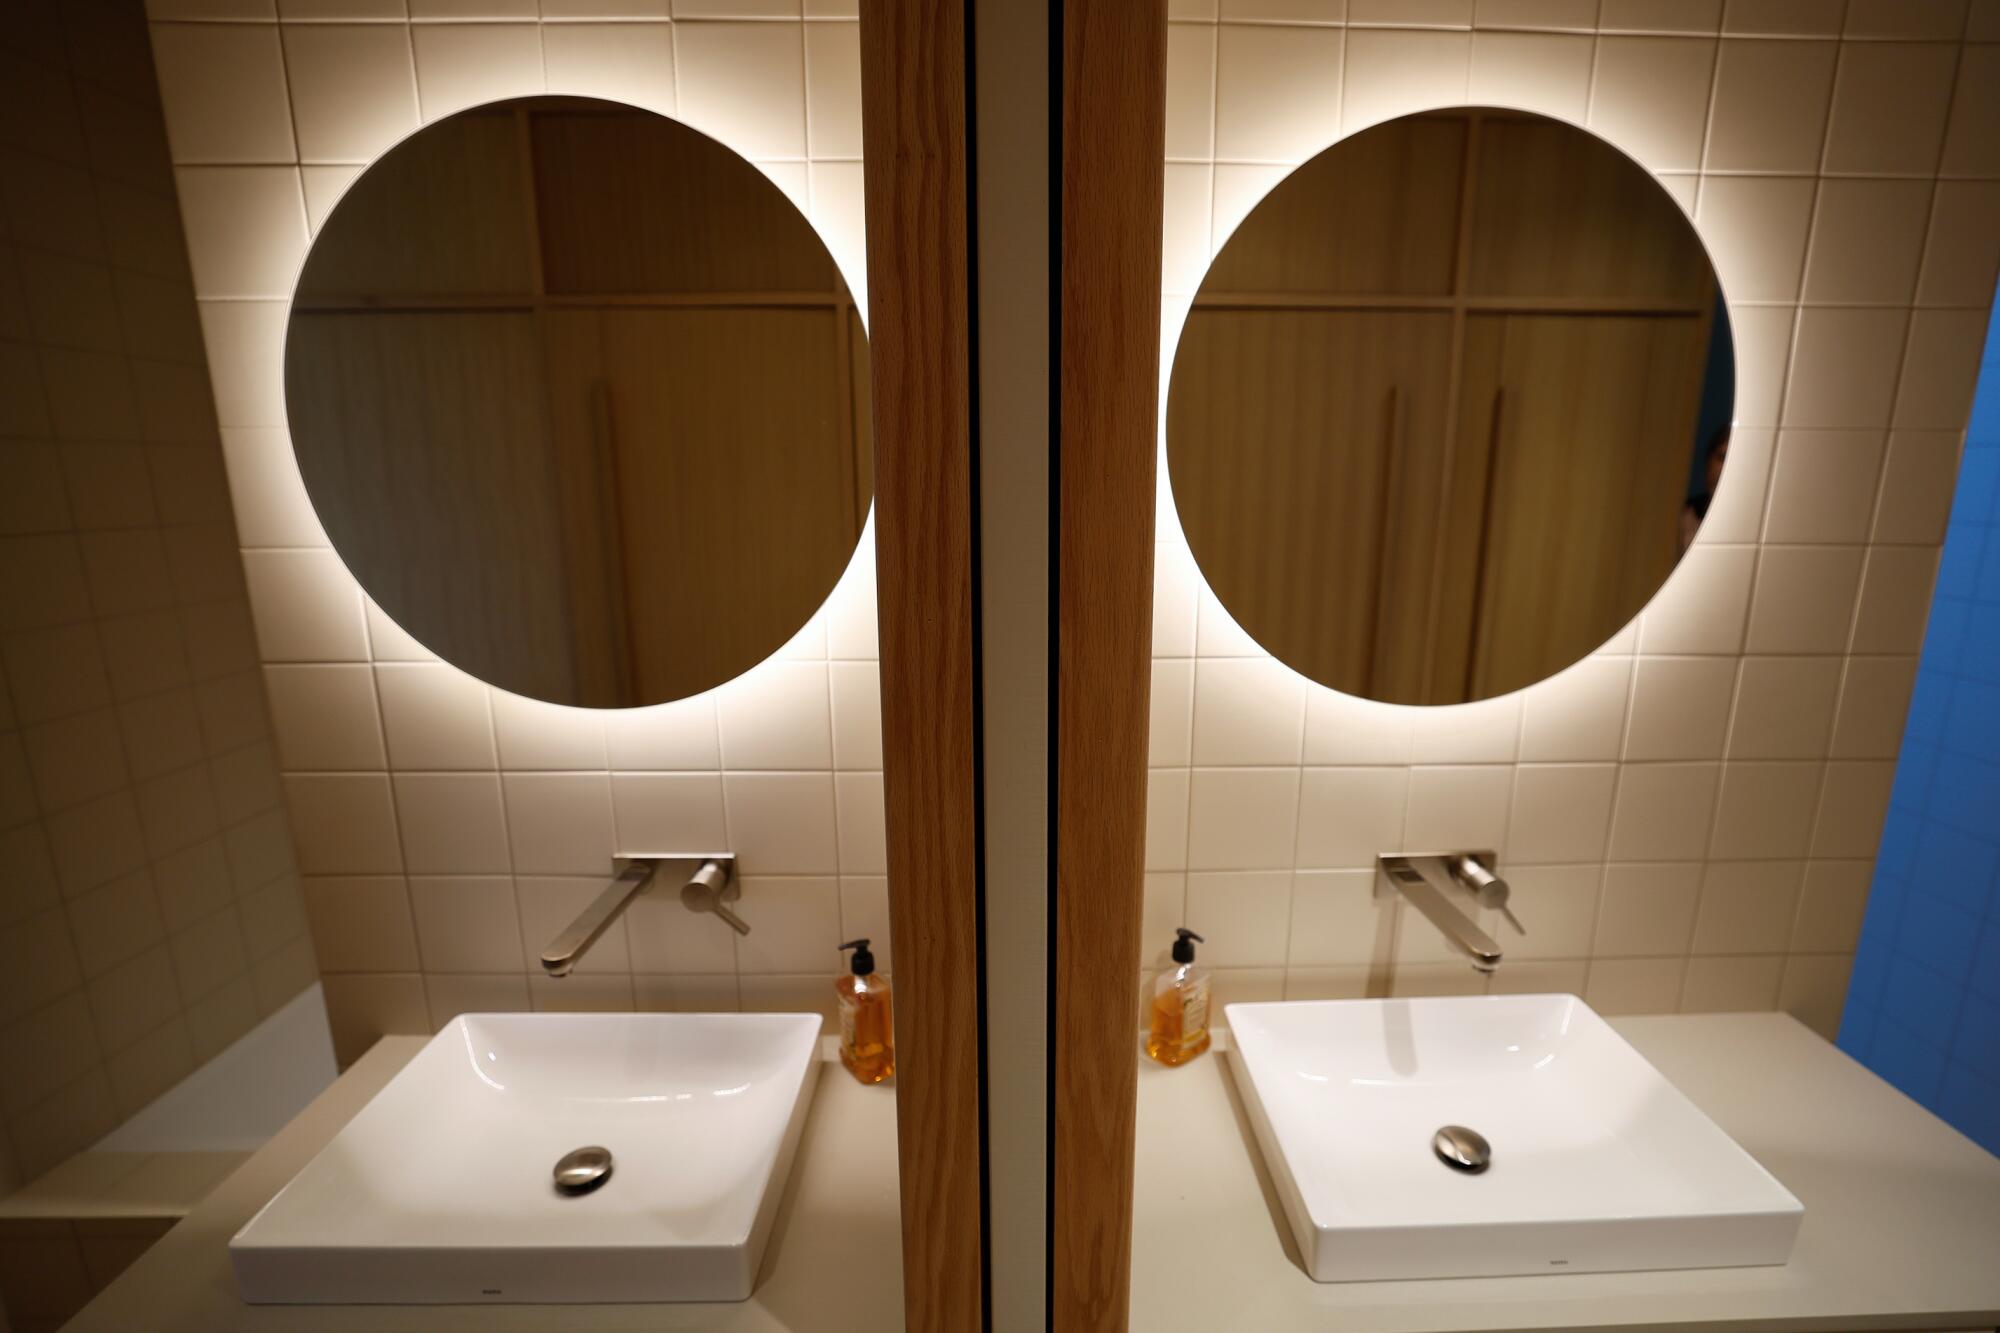 La luz brilla detrás de un espejo encima de un lavabo y se refleja en un espejo.